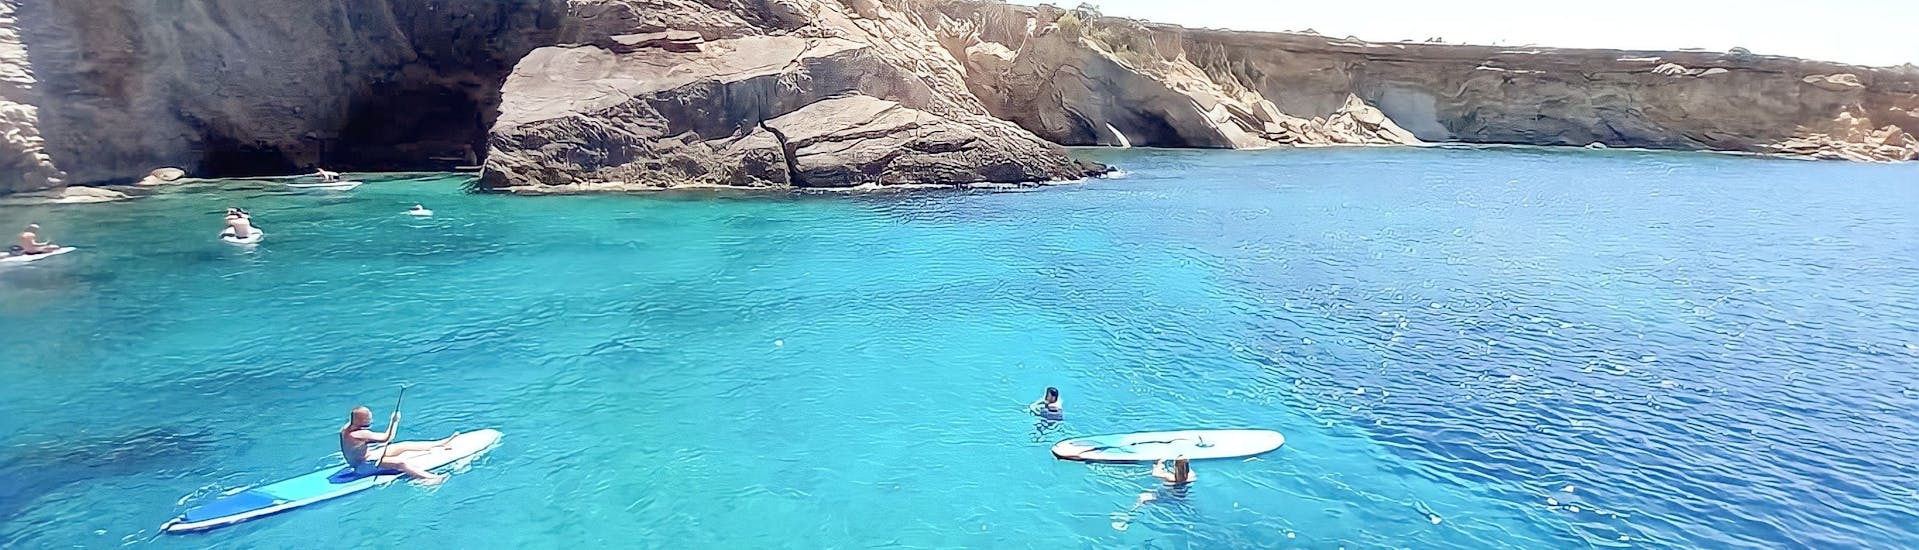 Aguas Turquesas en la costa de Ibiza y algunas personas disfrutando de actividades de agua con un barco privado de Salvador Ibiza.